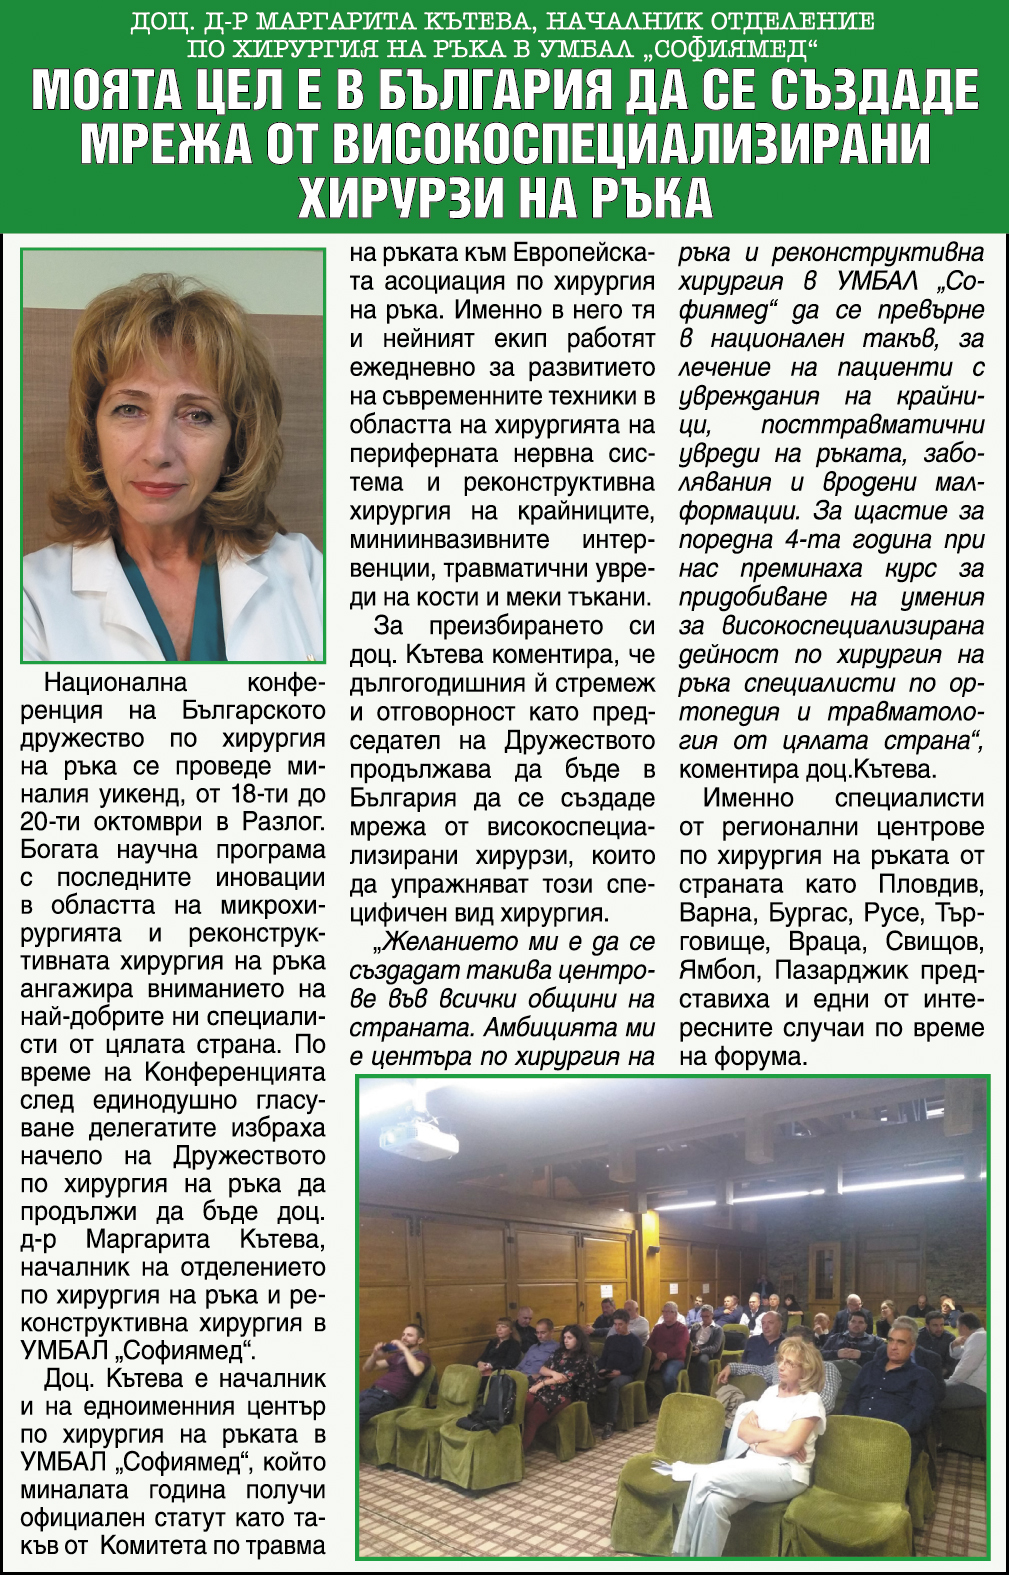 Моята цел е в България да се създаде мрежа от високоспециализирани хирурзи на ръка